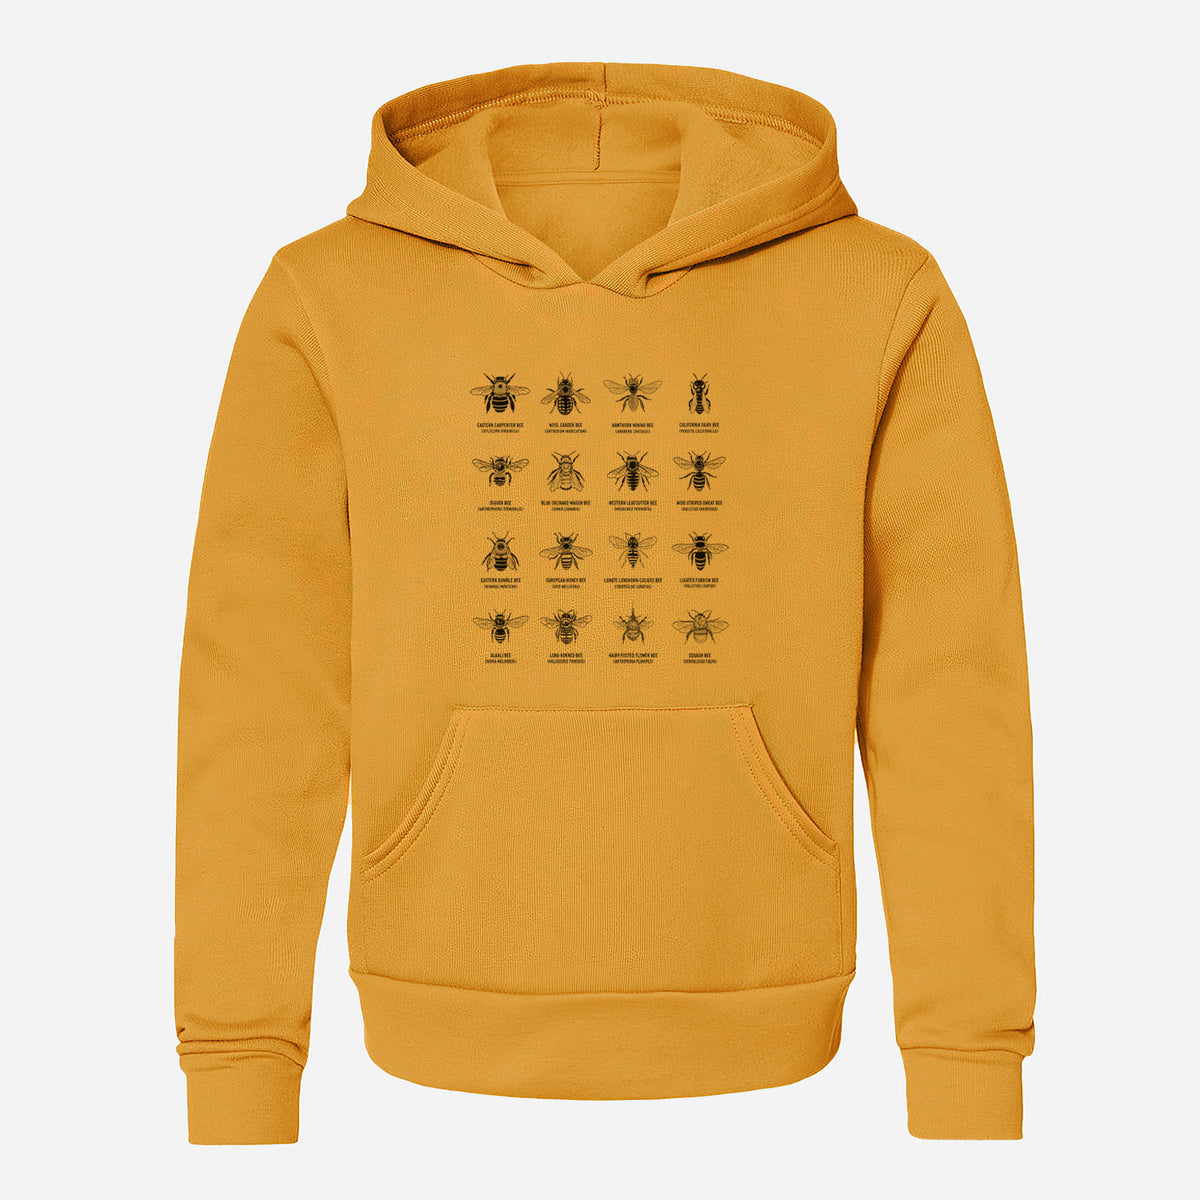 Bee Chart - Bees in North America - Youth Hoodie Sweatshirt